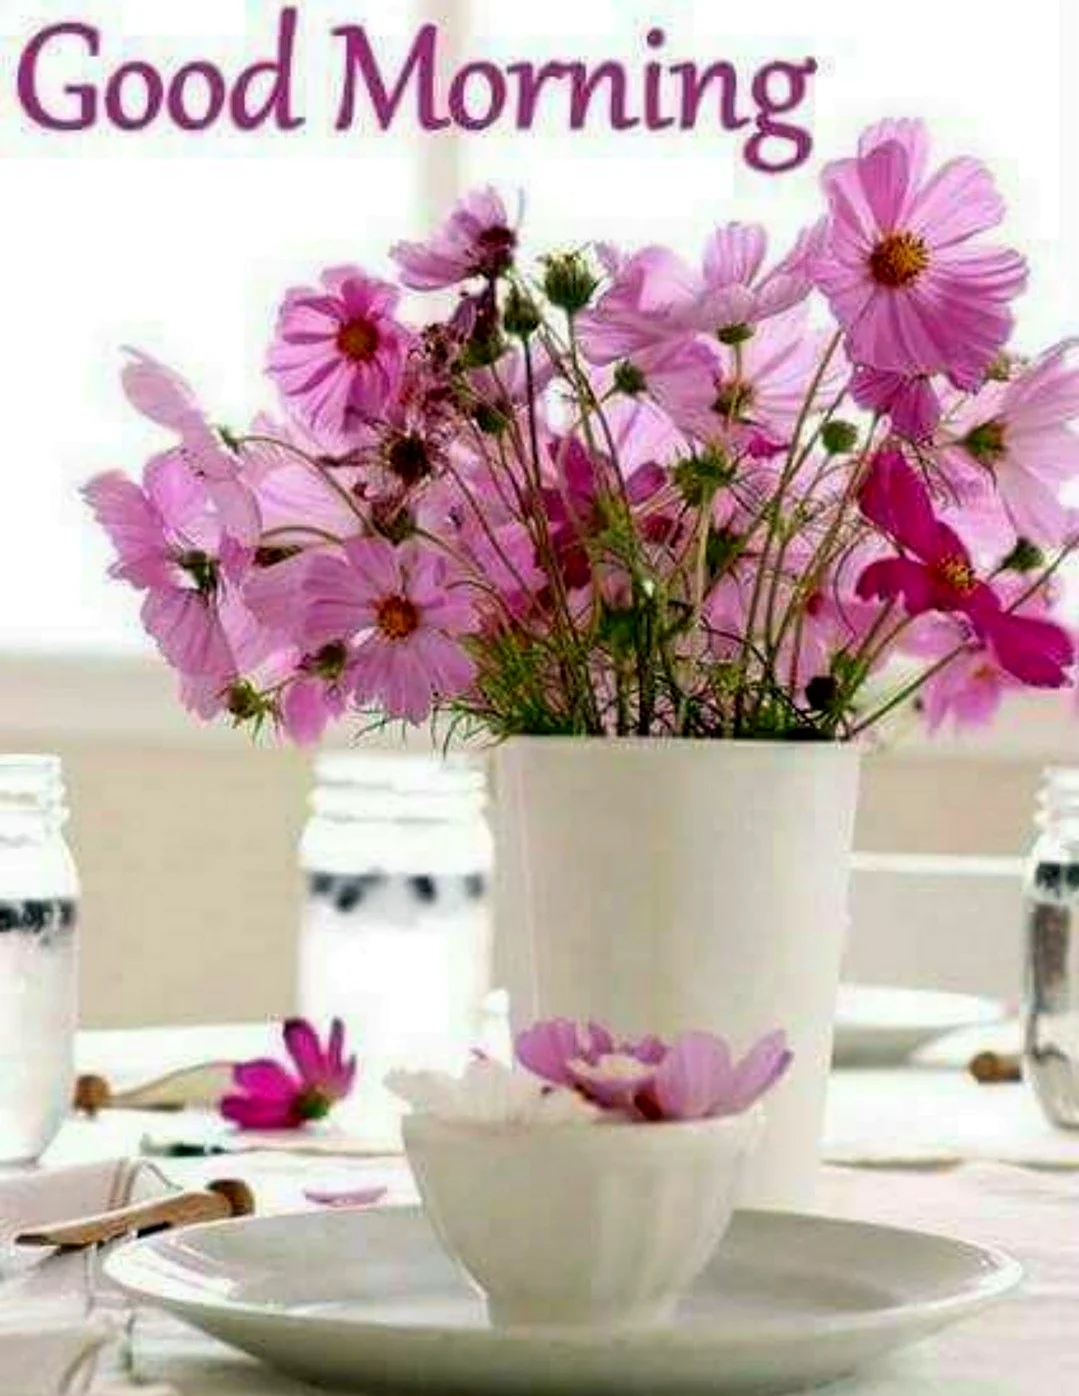 Good morning цветы. Красивая картинка